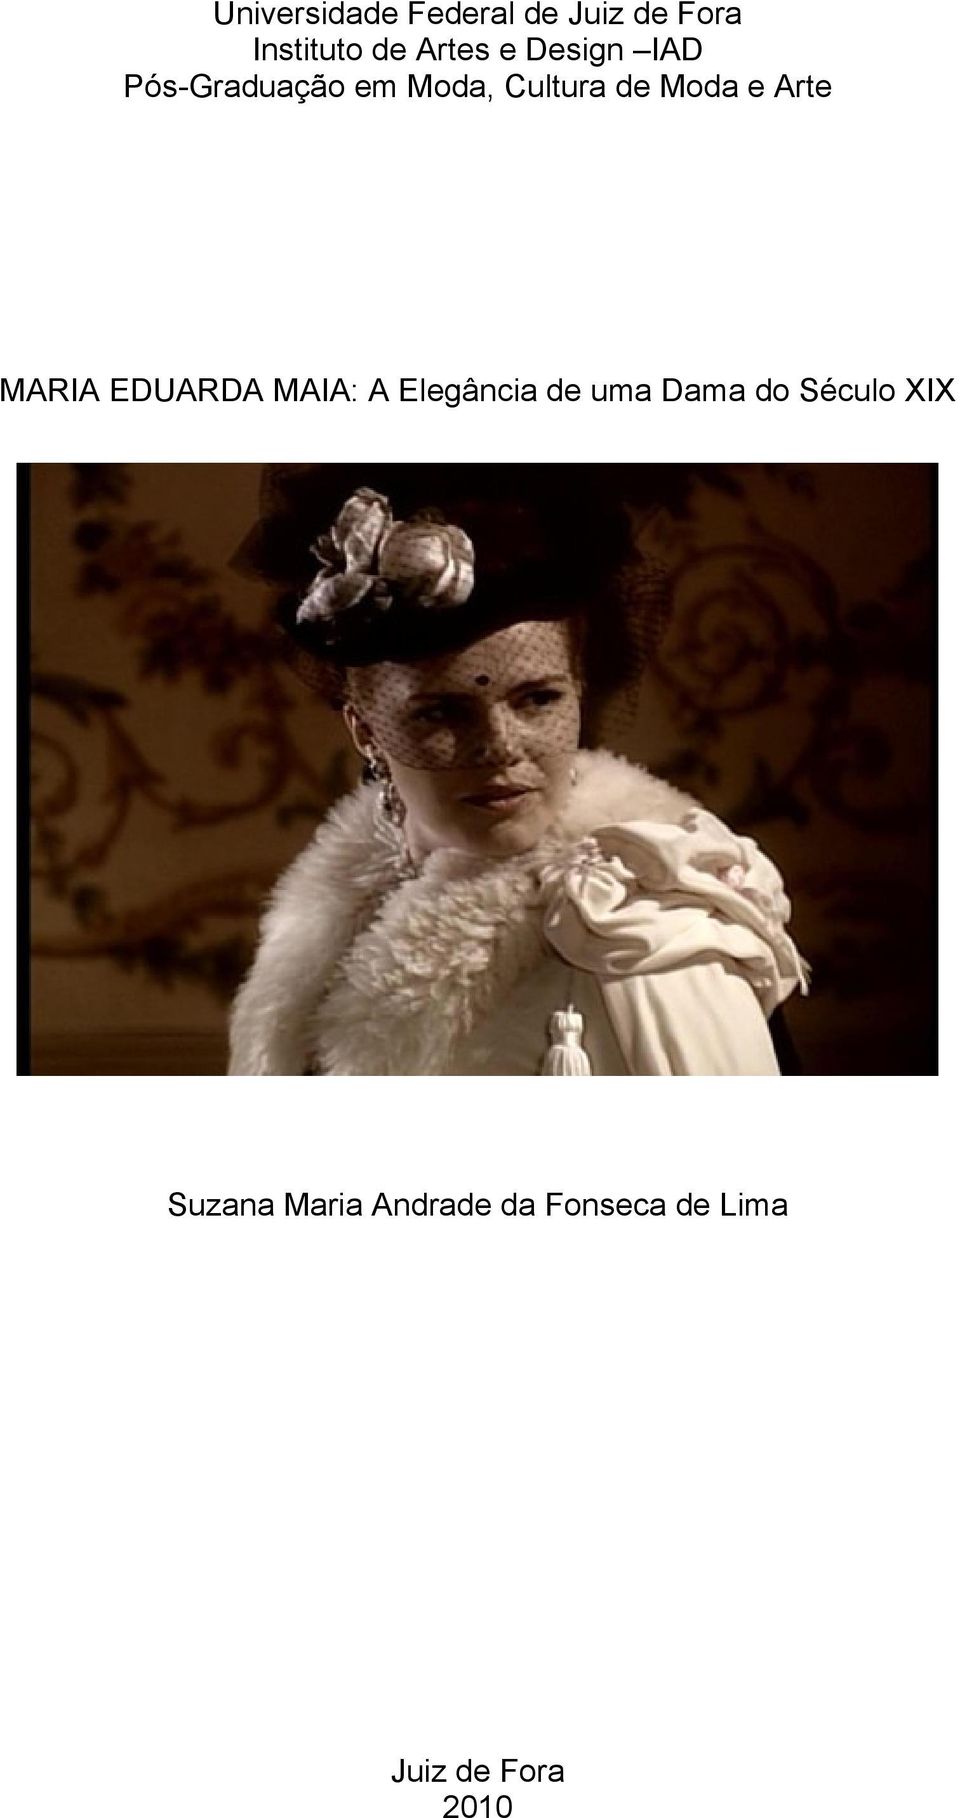 MARIA EDUARDA MAIA: A Elegância de uma Dama do Século XIX